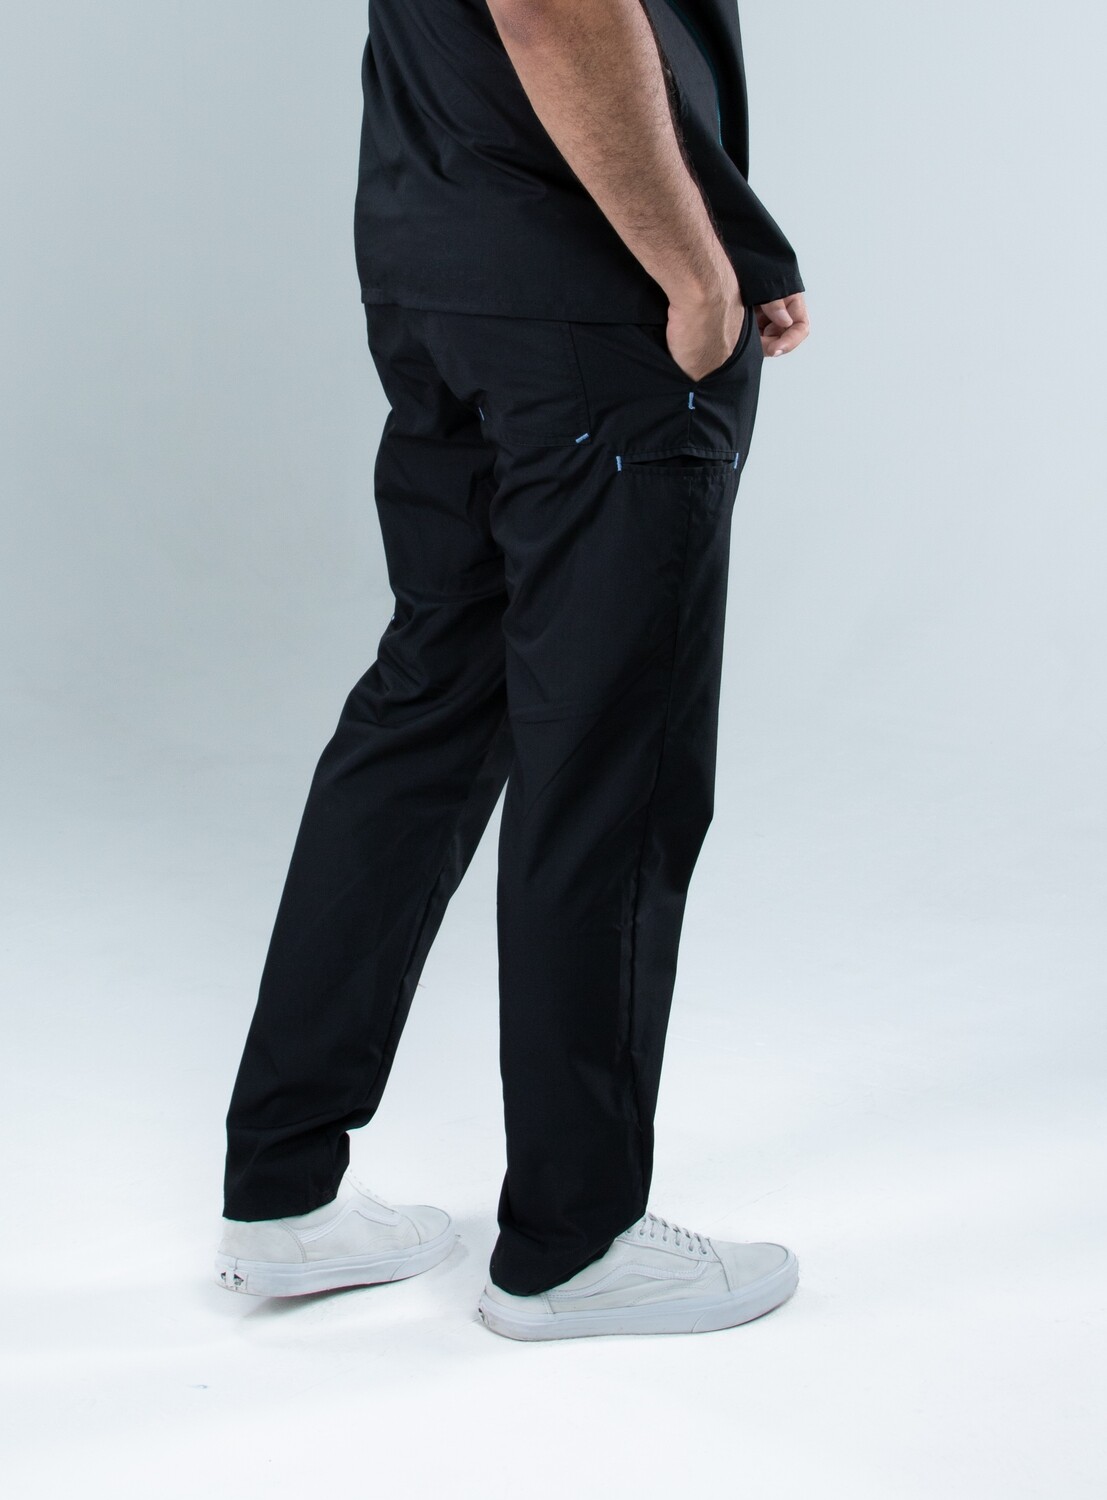 Pantalón hombre bolsillos laterales cinta ajustable negro y contrastes